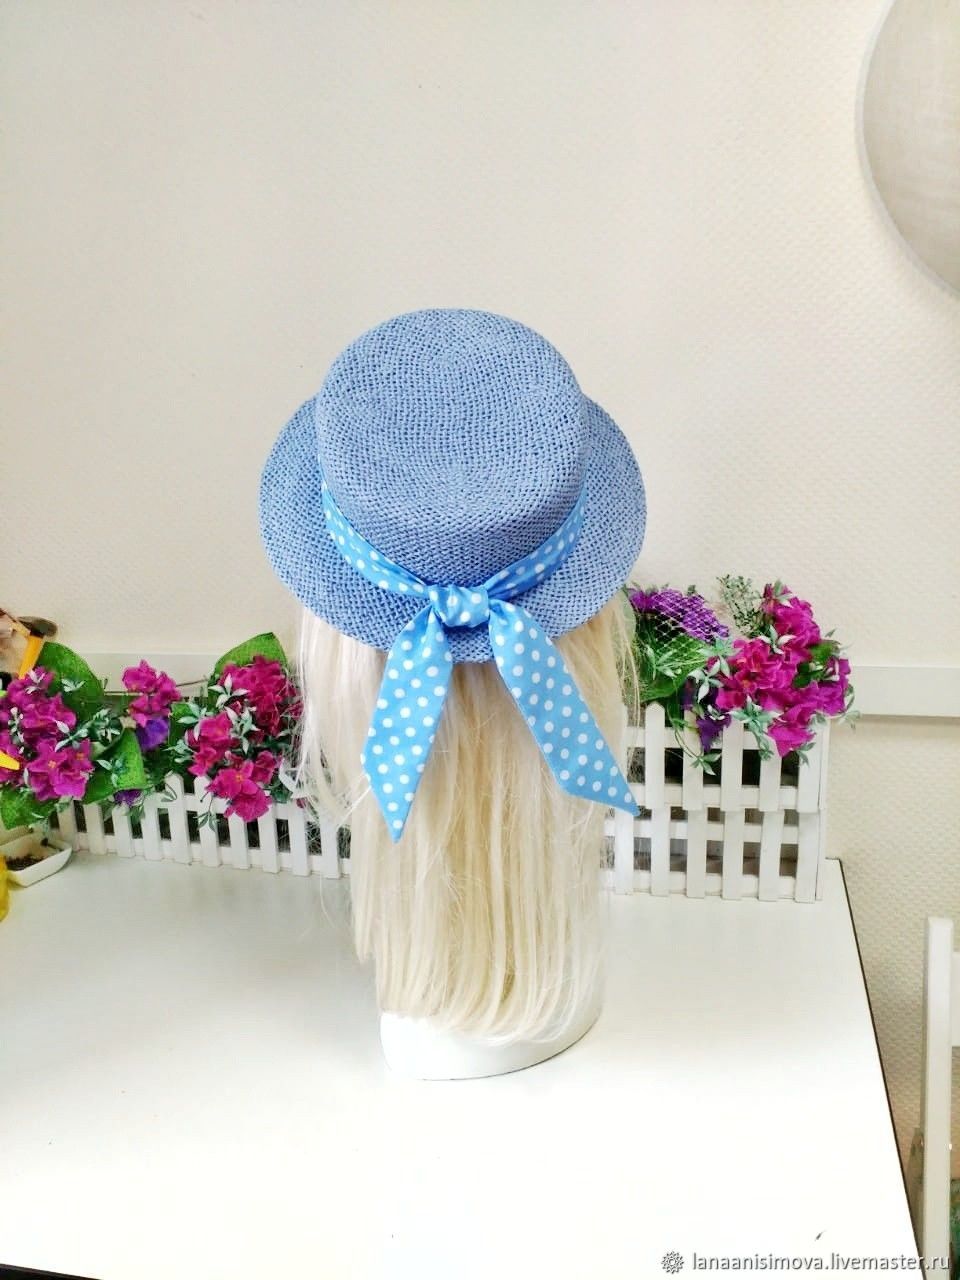 Шляпа синего цвета. Голубая шляпа. Декор соломенной шляпки. Шляпка в морском стиле. Синяя соломенная шляпа.